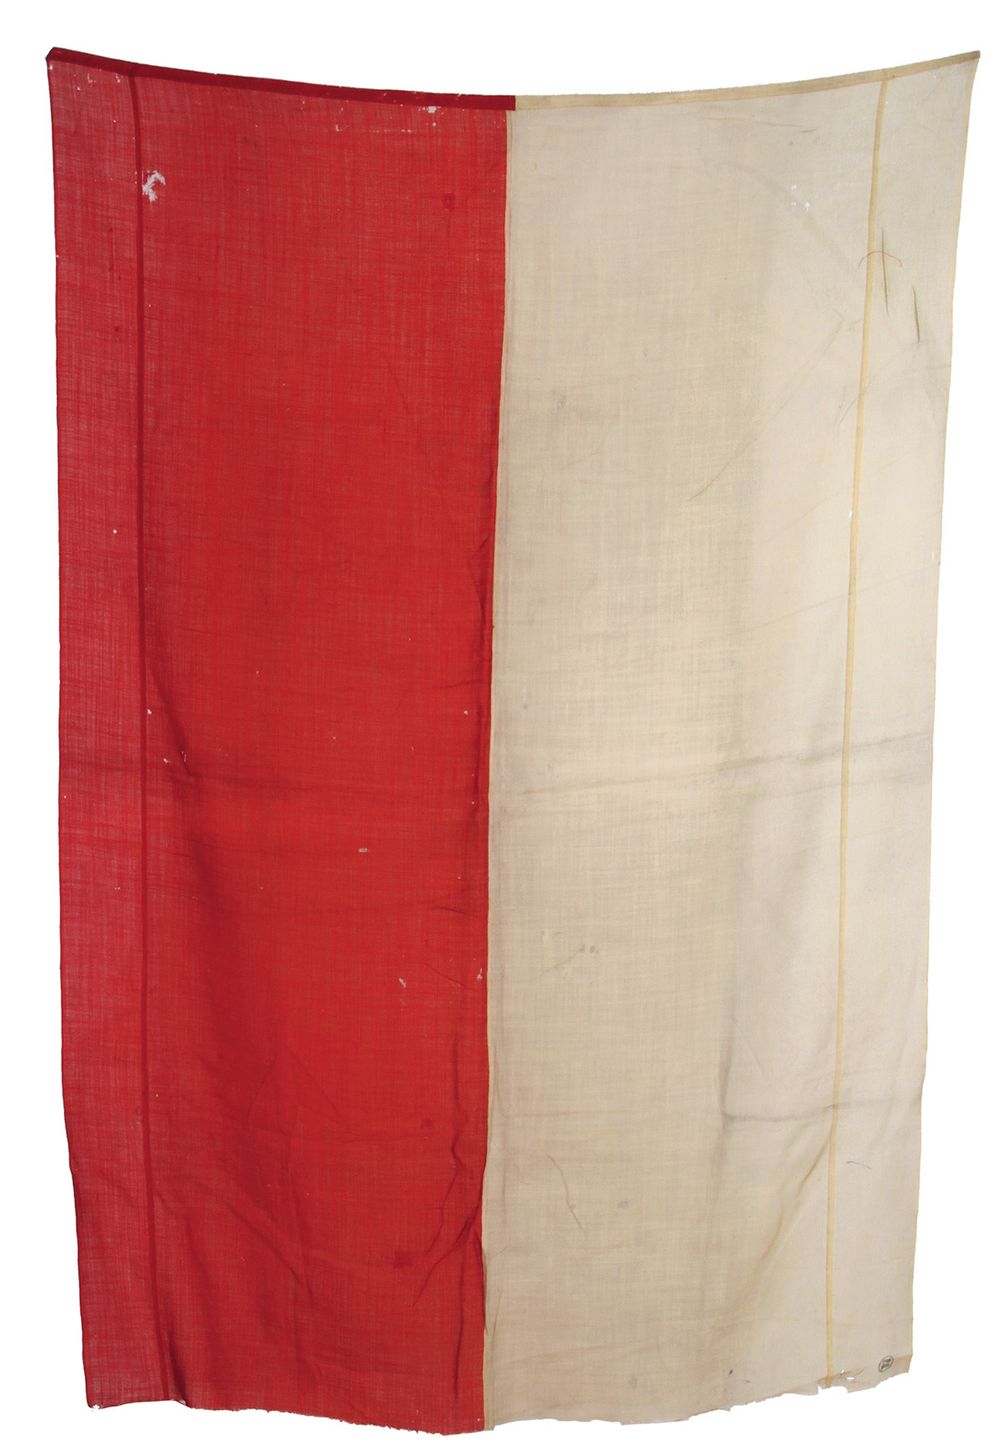 Vlajka paní Tingley, 1912. Bílo-červená vlajka byla dlouhá léta používána jako jeden ze symbolů českých zemí. V roce 1913 ji ušila i Katherine Tingley, spoluzakladatelka americké mystické Theosofické společnosti (pozdějšího základu pro formování esoteriky). Vlajka byla použita na mírové konferenci ve Švédsku, kde zastupovala český národ. V roce 1919 ji K. Tingley předala veliteli 5. transportu čs. legií z lodi Archer, plujícího do Evropy přes USA. Prvního oficiálního vyvěšení se československá bílo-červená vlajka dočkala 18. října 1918, kdy byla vztyčena ve Washingtonu na domě, v němž bydlel T. G. Masaryk. Téhož dne předal představitelům USA Prohlášení nezávislosti československého národa, tzv. Washingtonskou deklaraci.